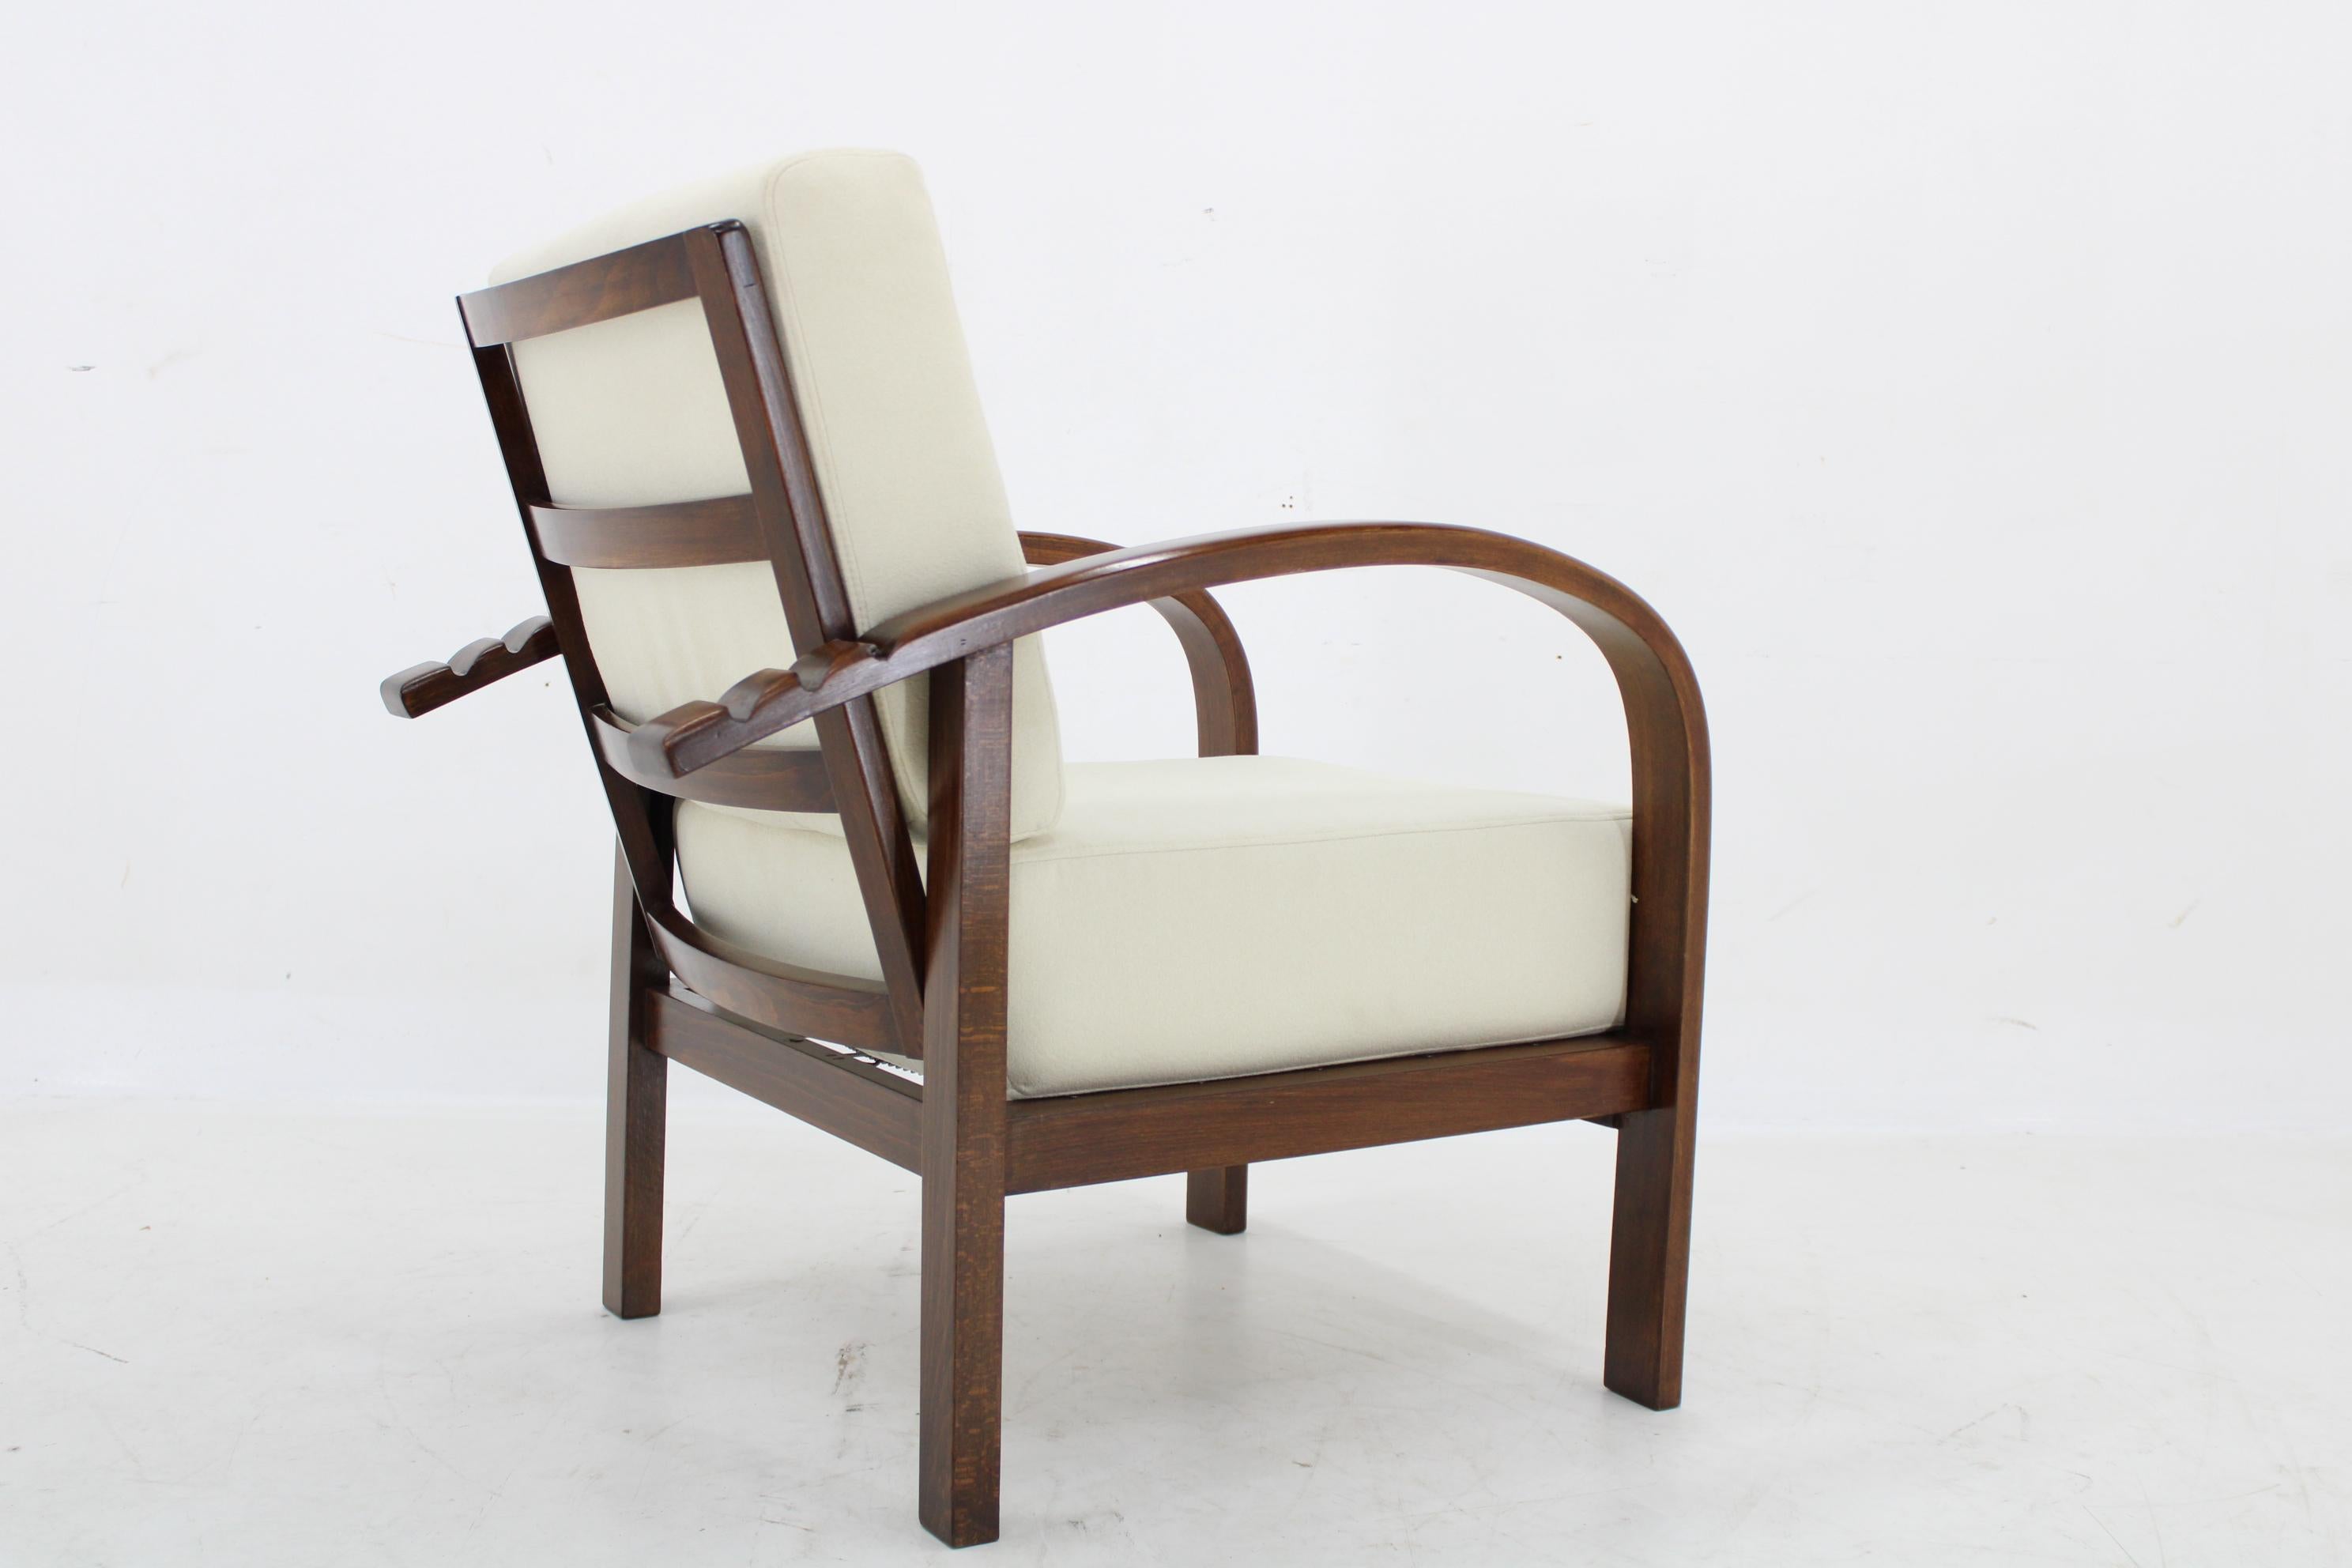 1930s Restored Art Deco Adjustable Armchair by Fischel, Czechoslovakia For Sale 6